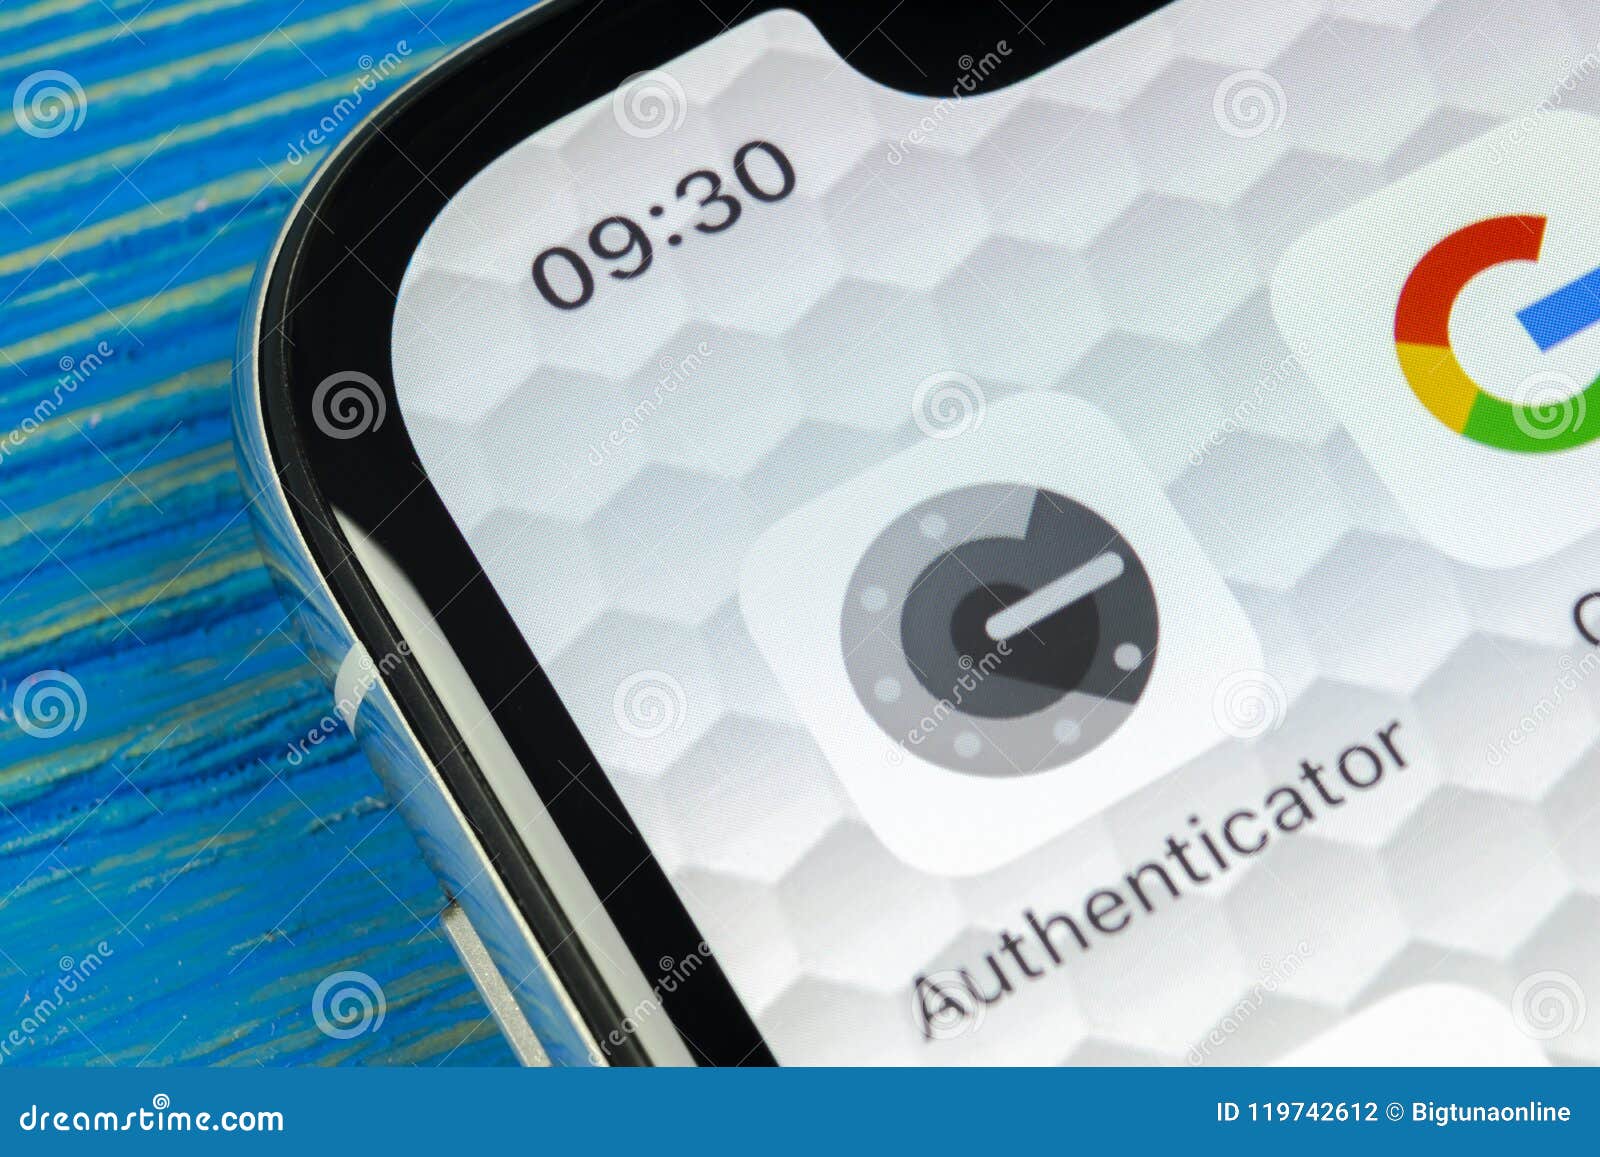 authenticator app iphone